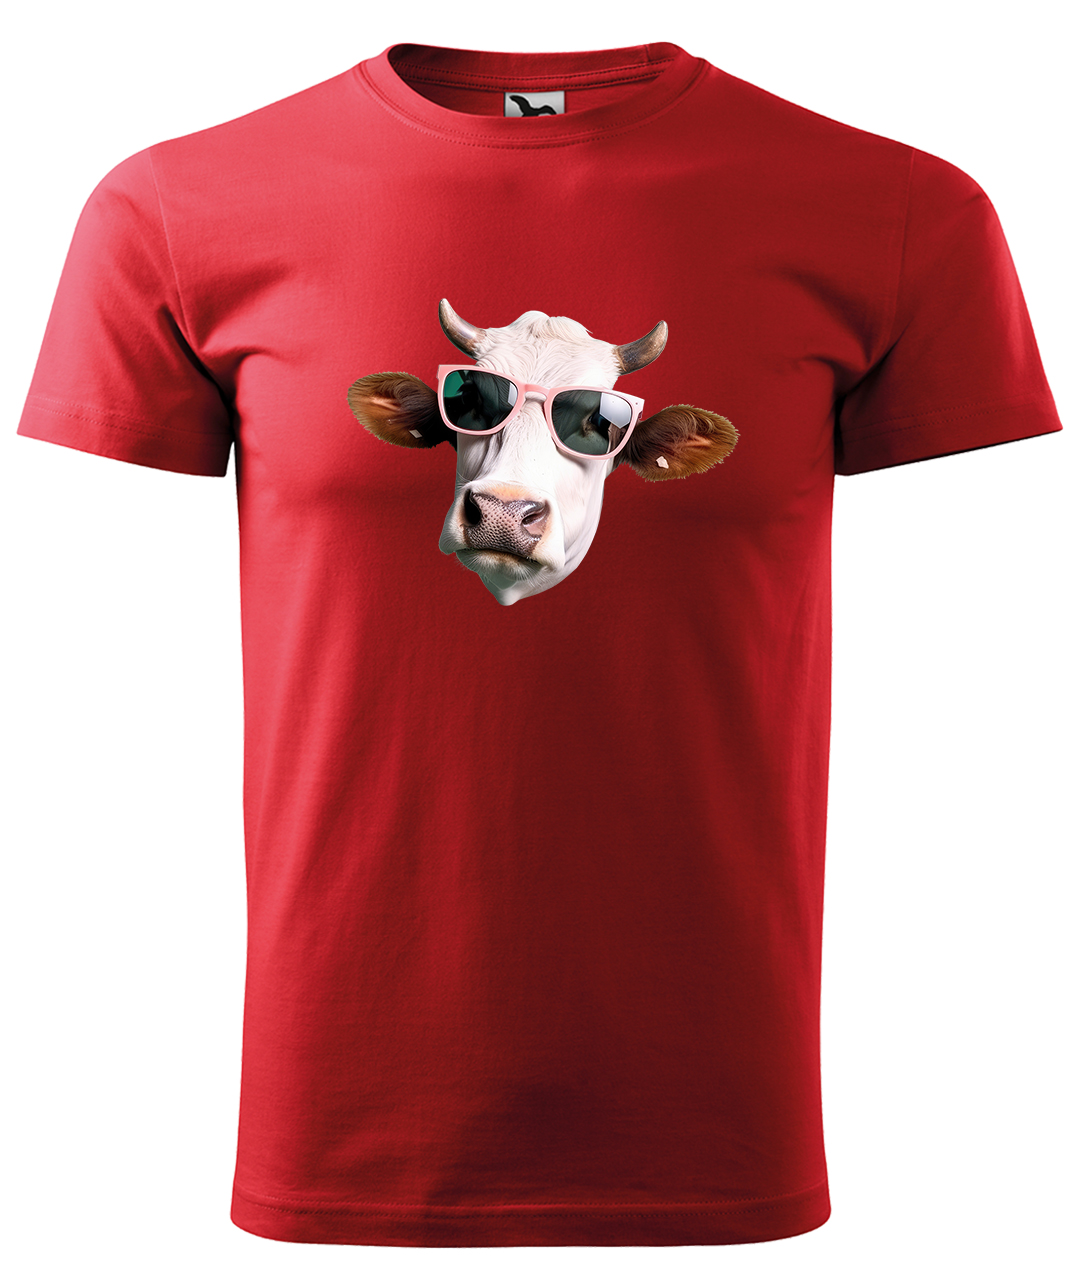 Dětské tričko s krávou - Kráva v brýlích Velikost: 12 let / 158 cm, Barva: Červená (07), Délka rukávu: Krátký rukáv